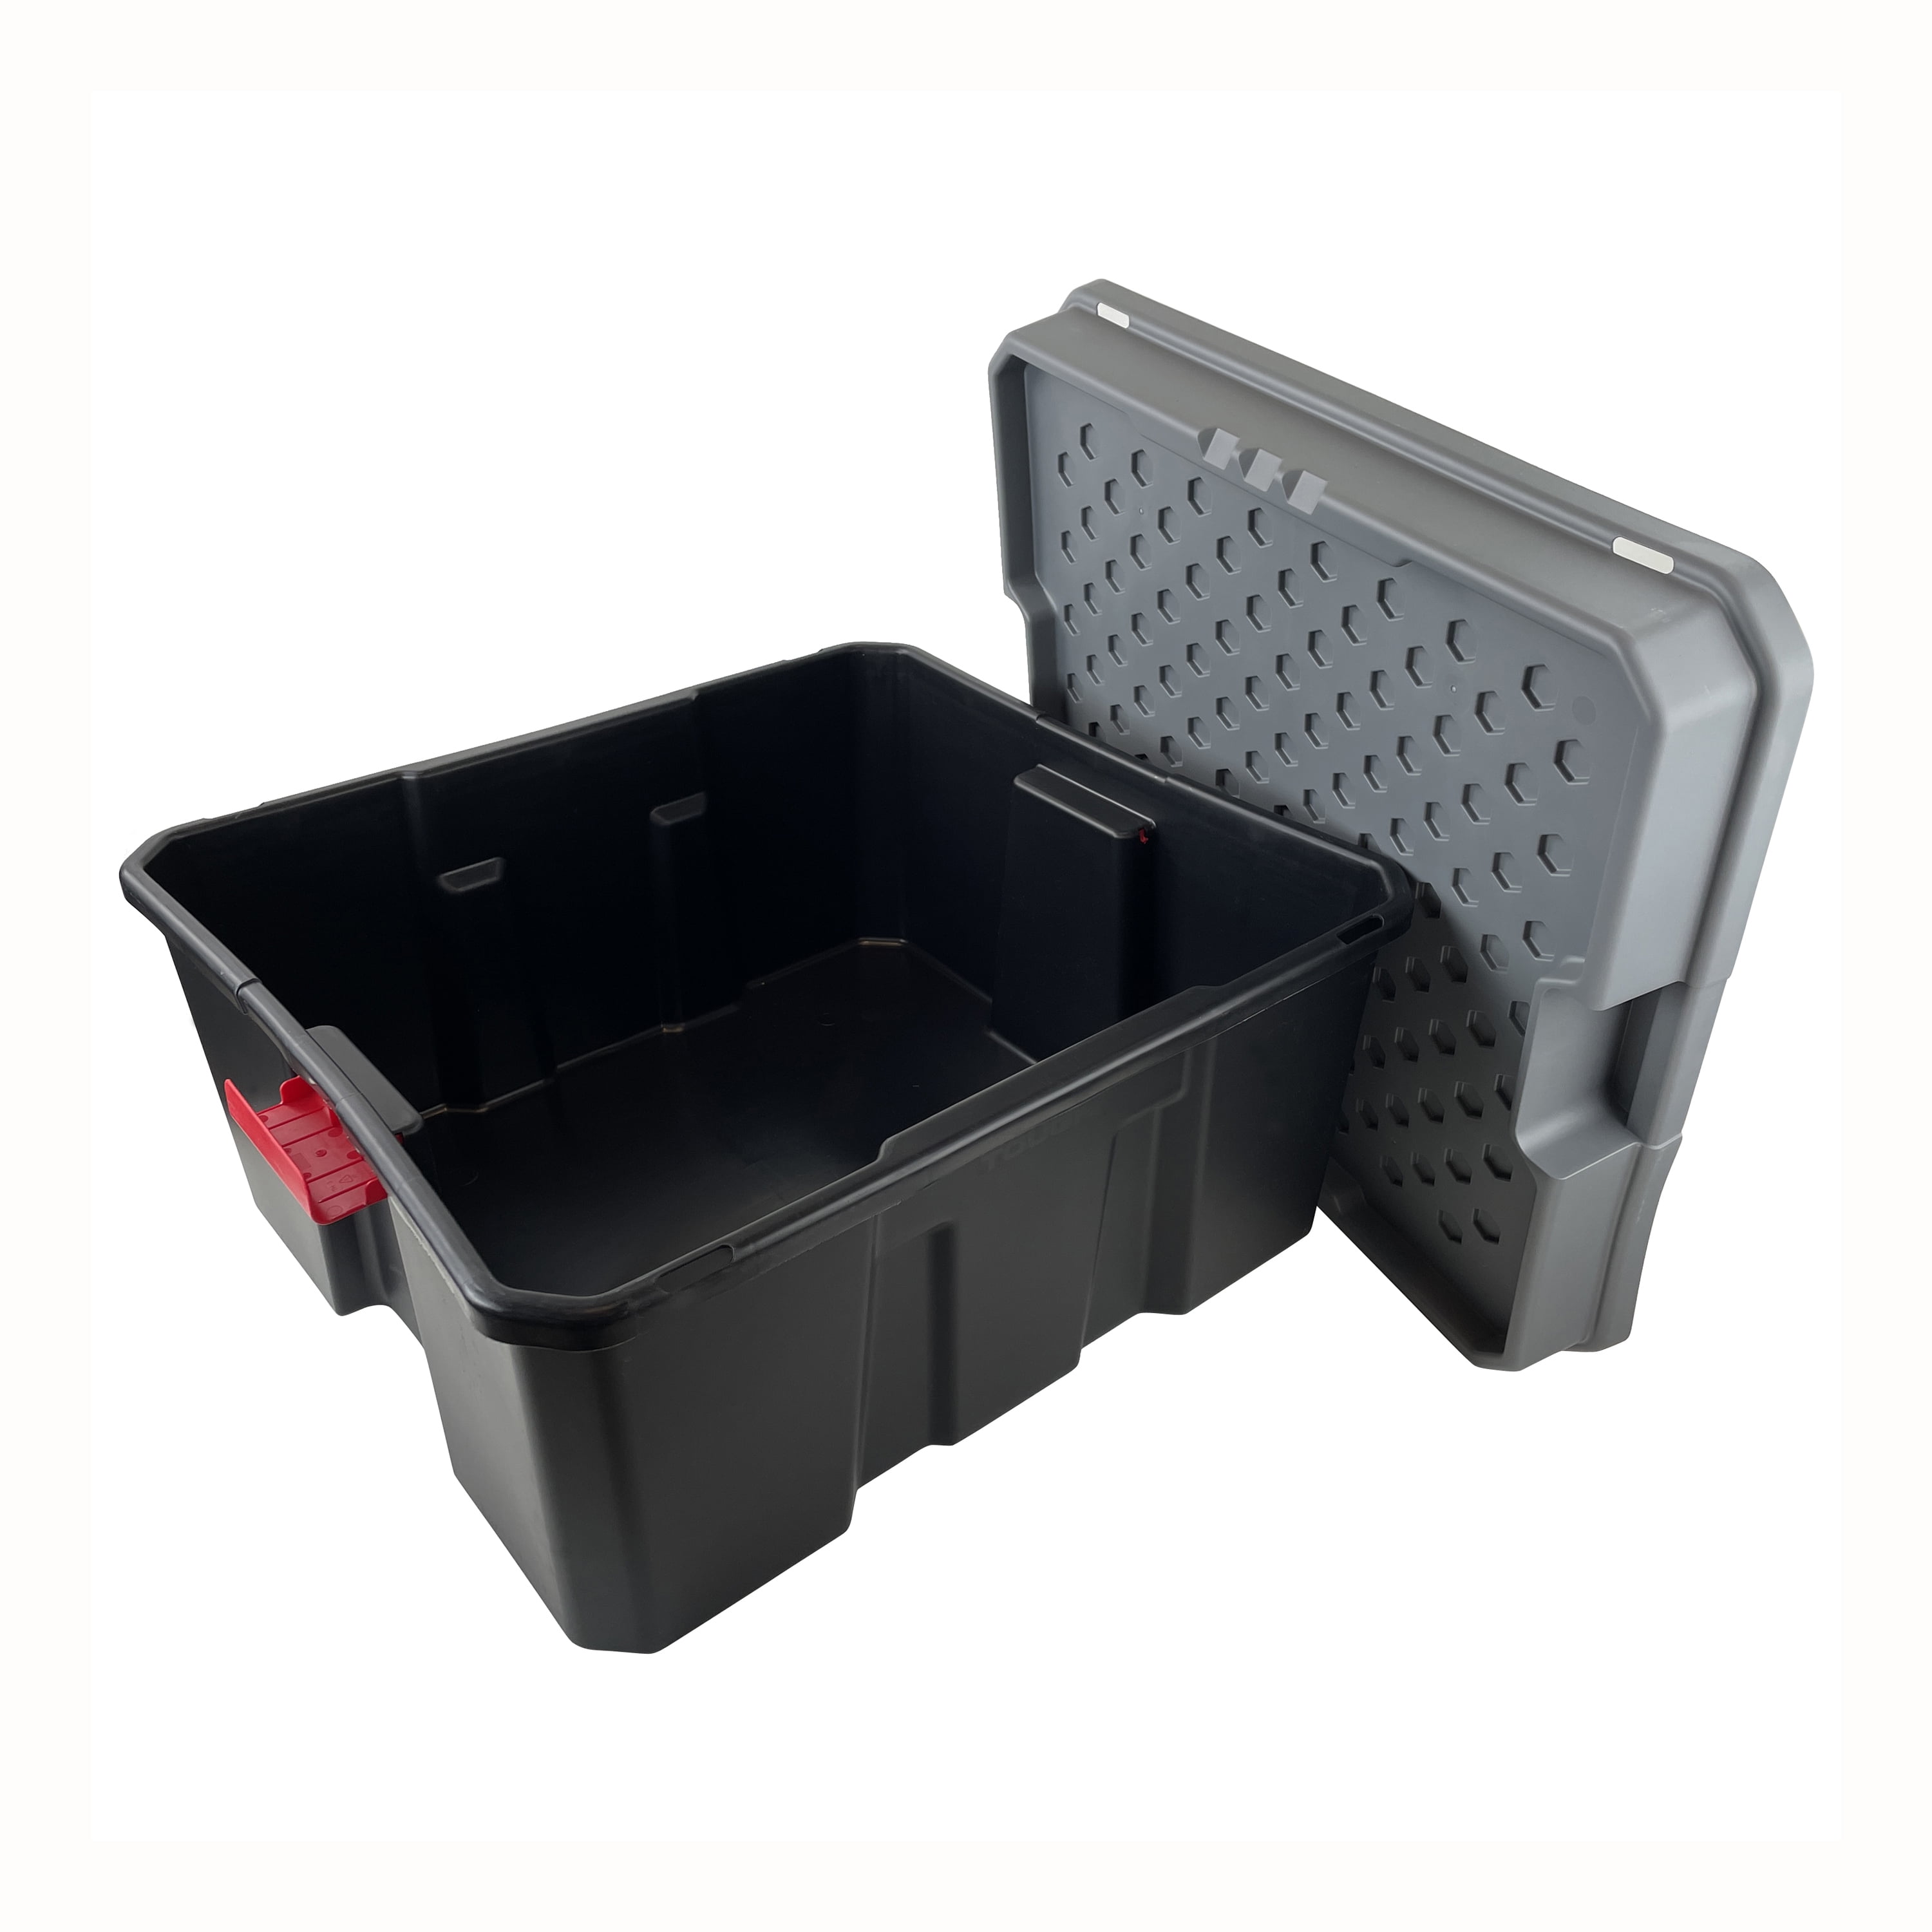 Tough Box 64-Gallon Black Polypropylene Storage Tote Wi